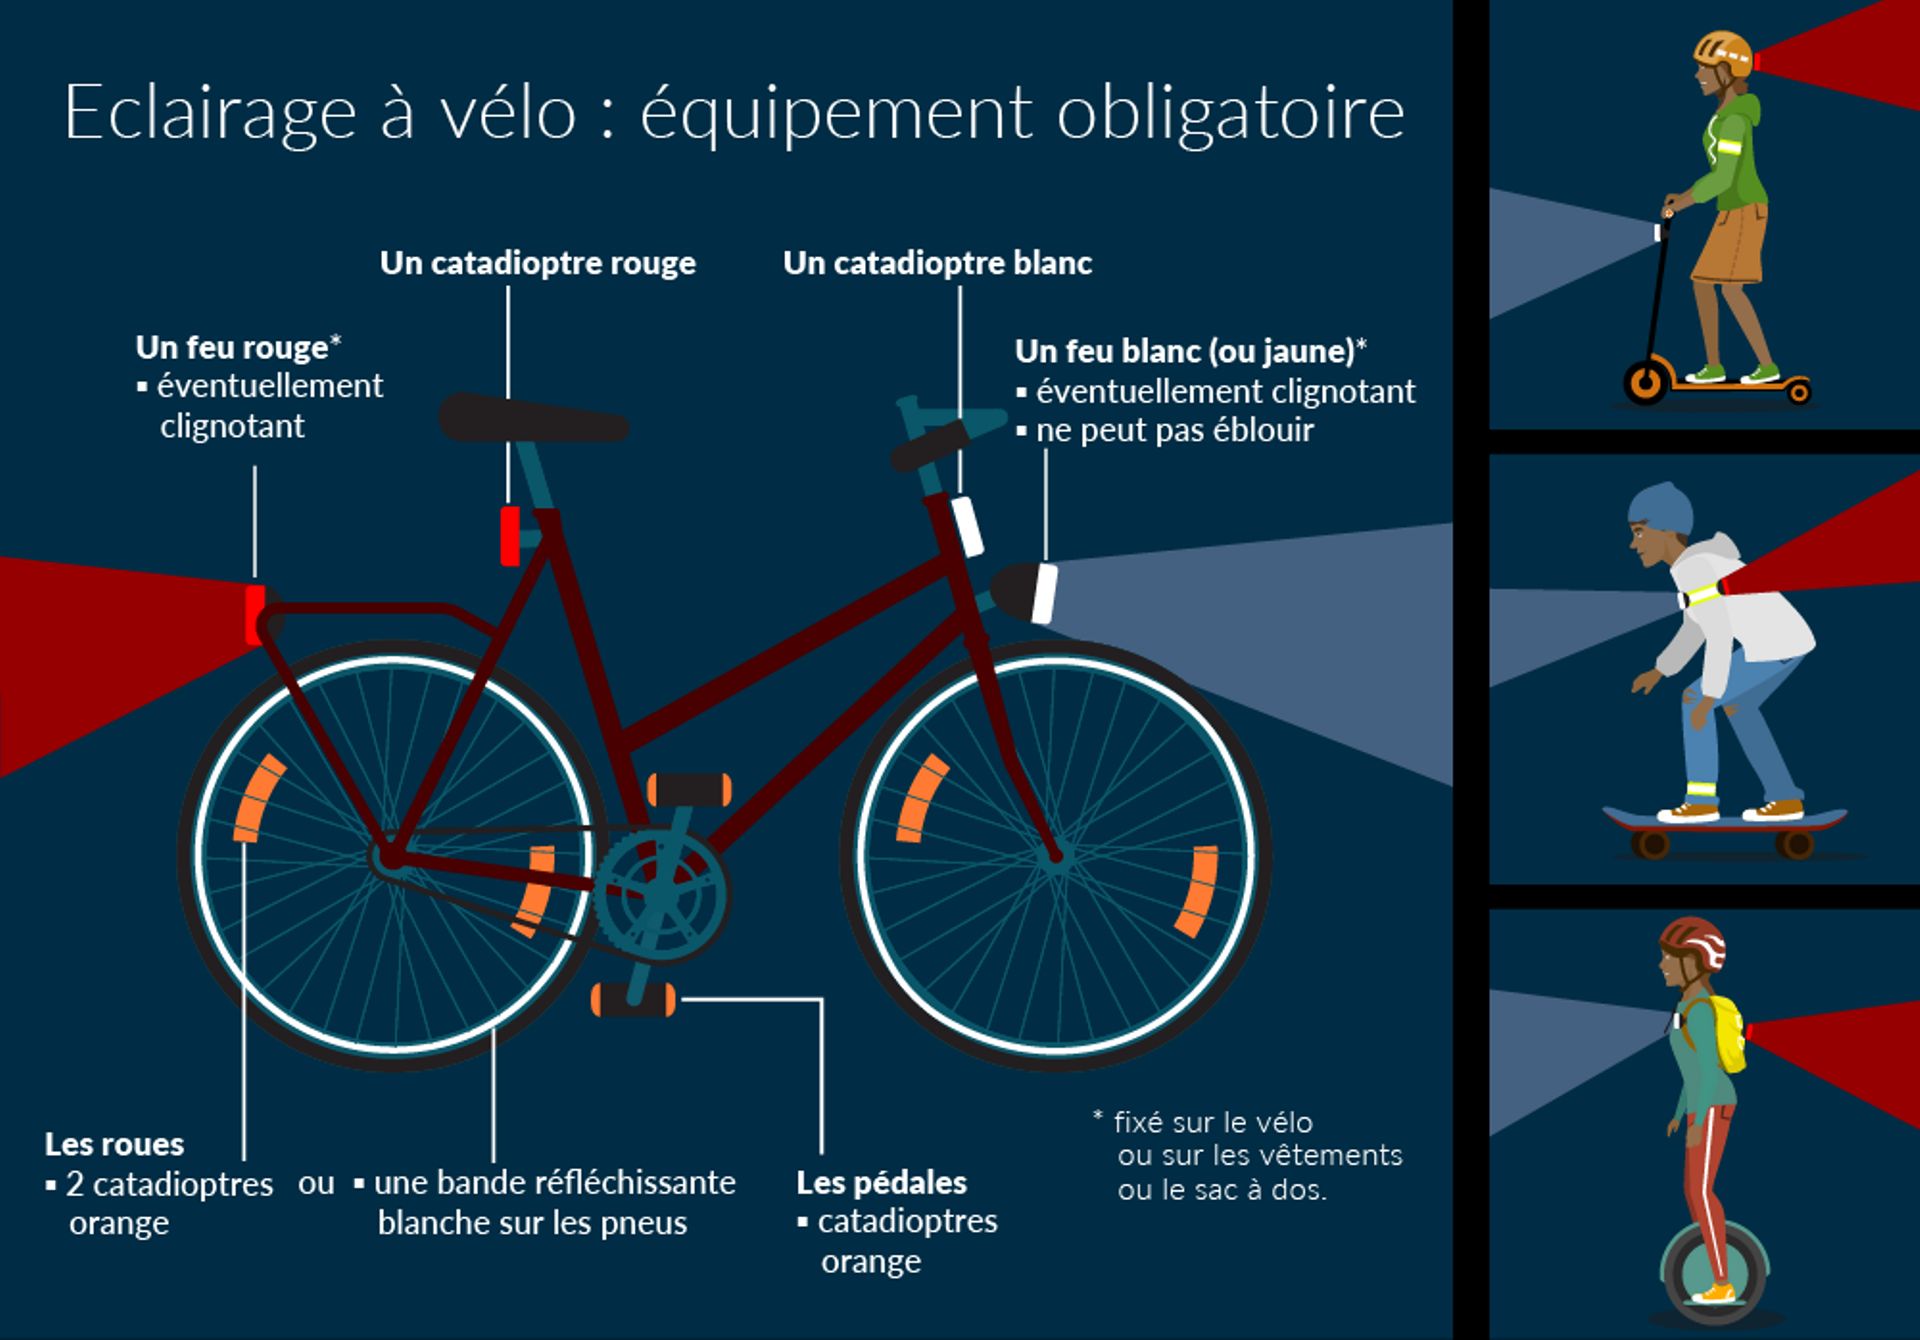 Équipements obligatoires pour circuler à vélo